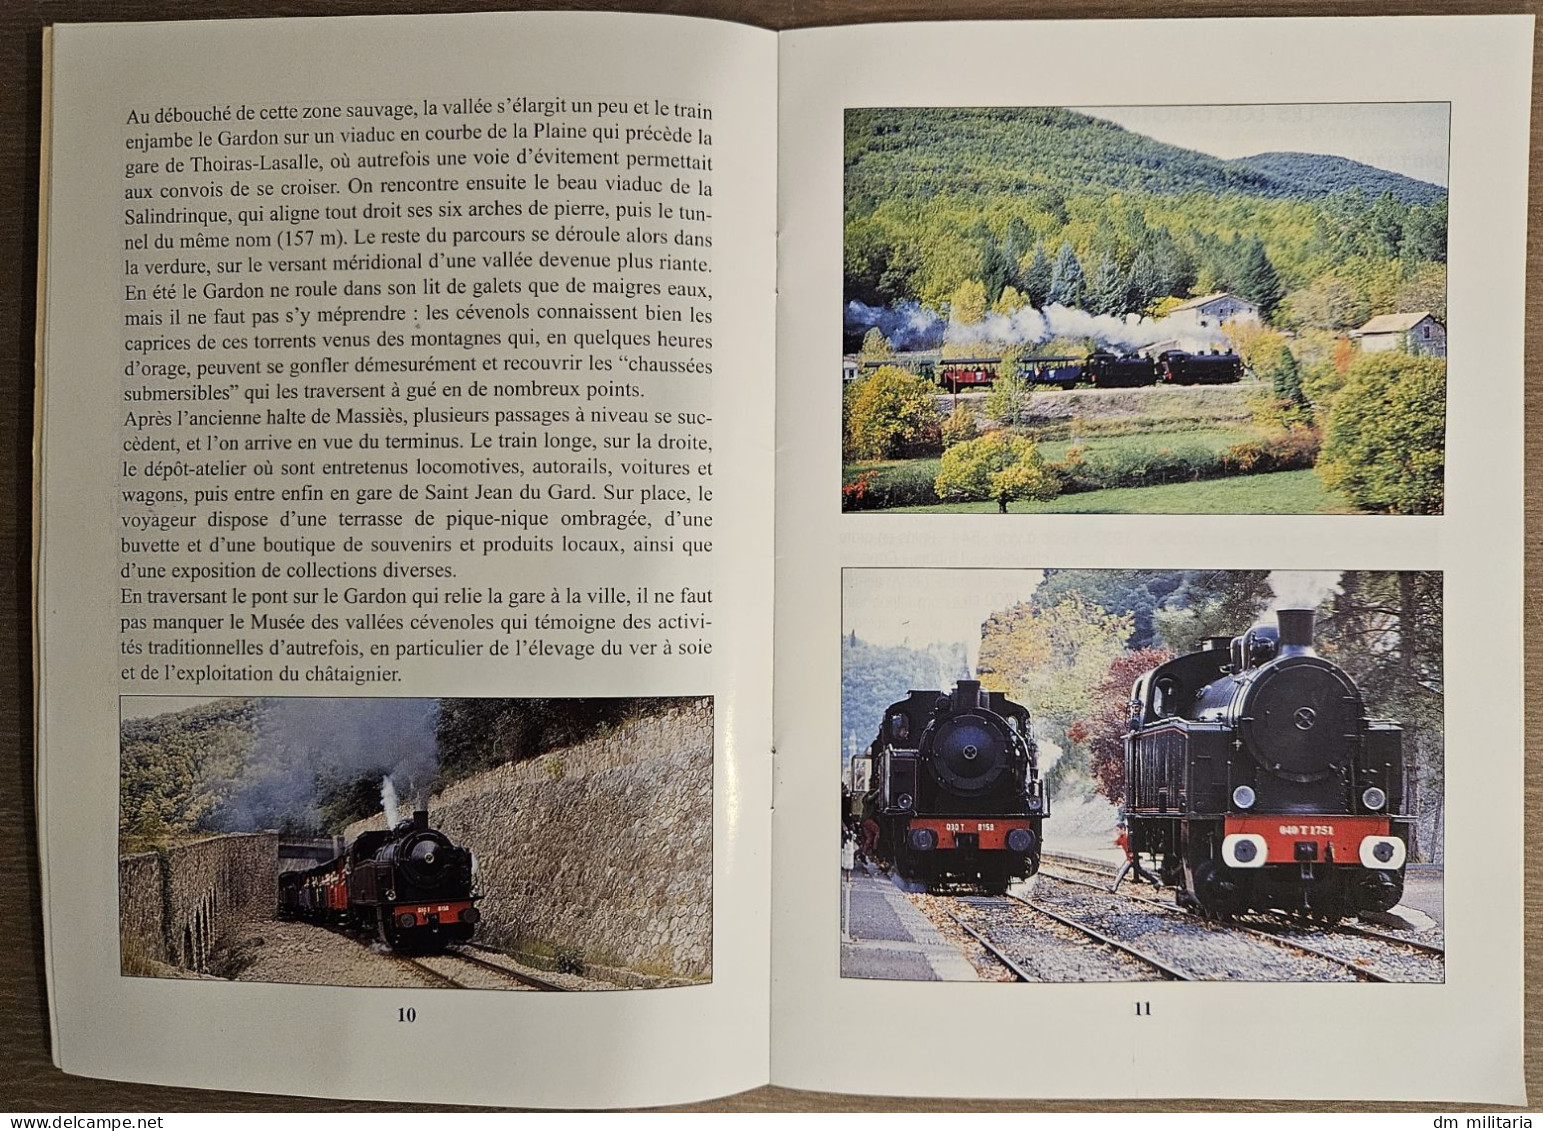 BROCHURE : Train à vapeur des Cévennes - Anduze - Saint Jean du Gard